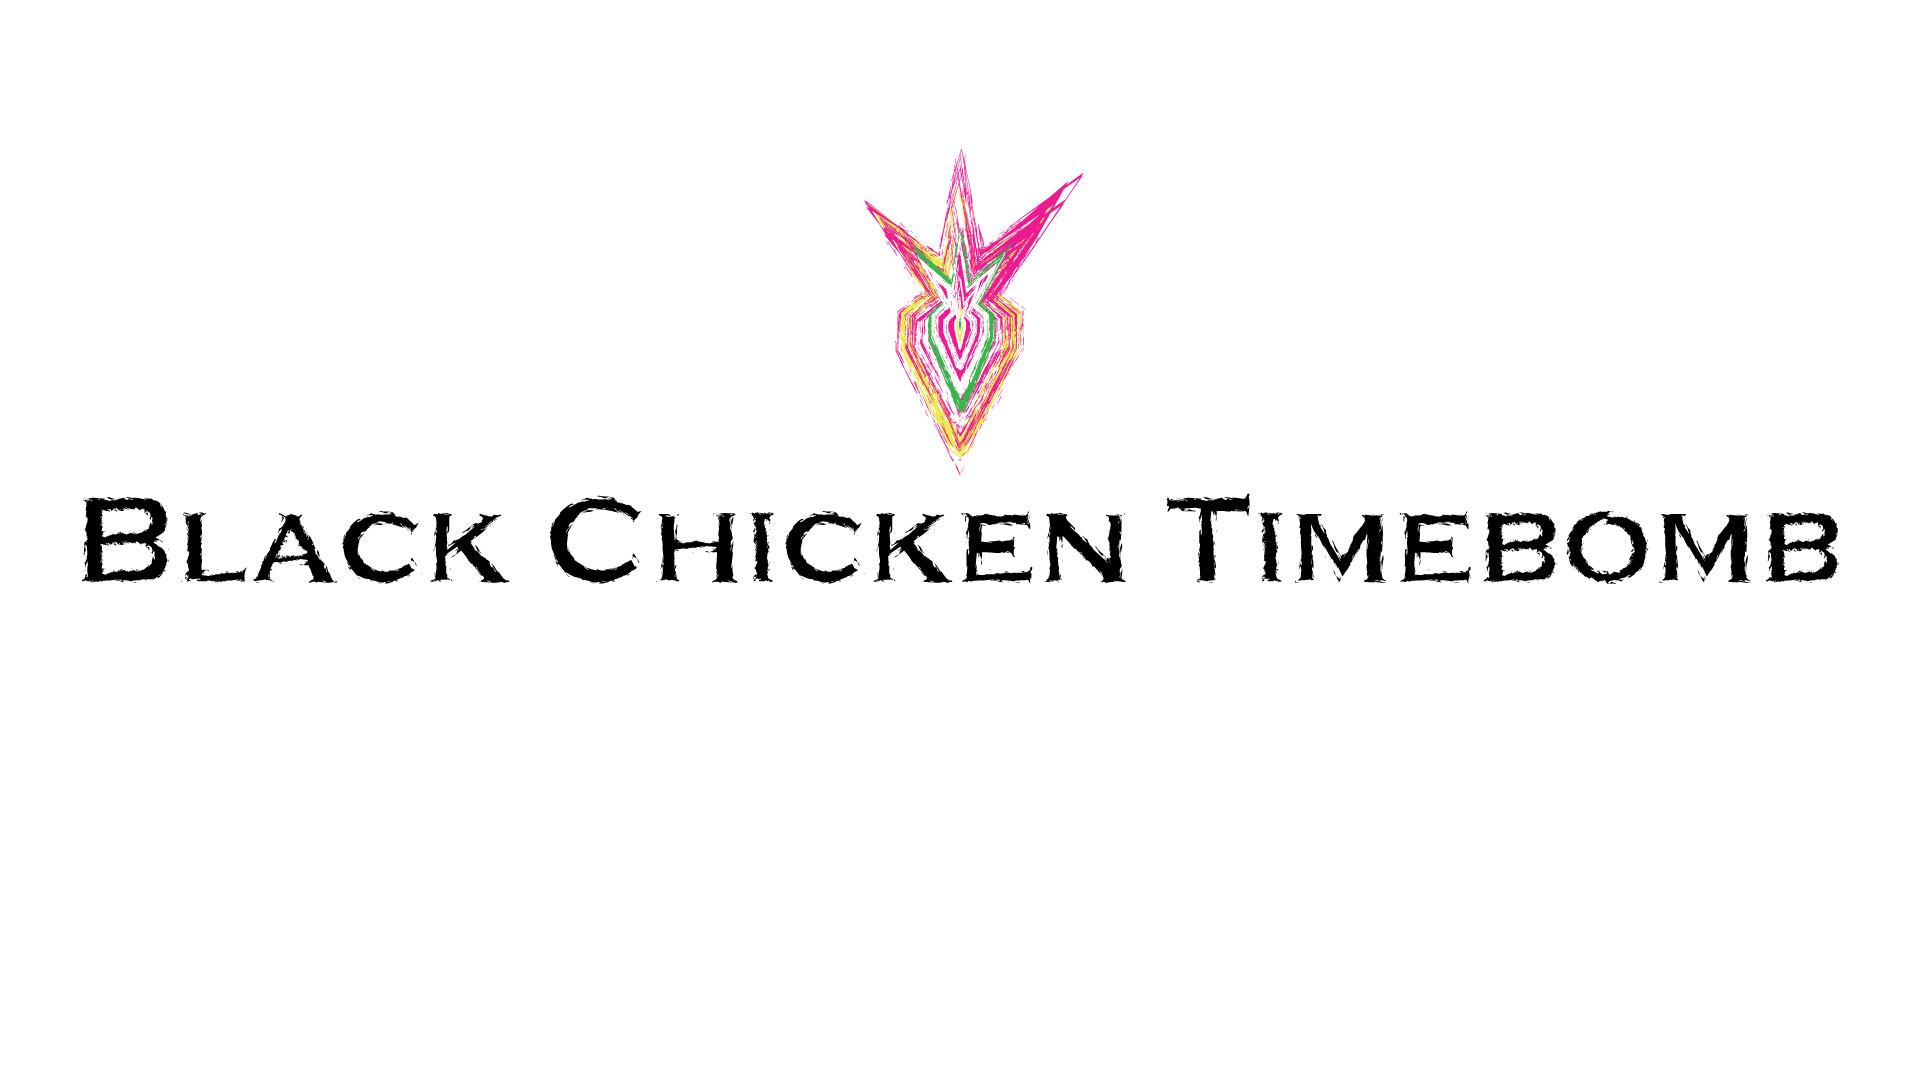 Black chicken timebomb